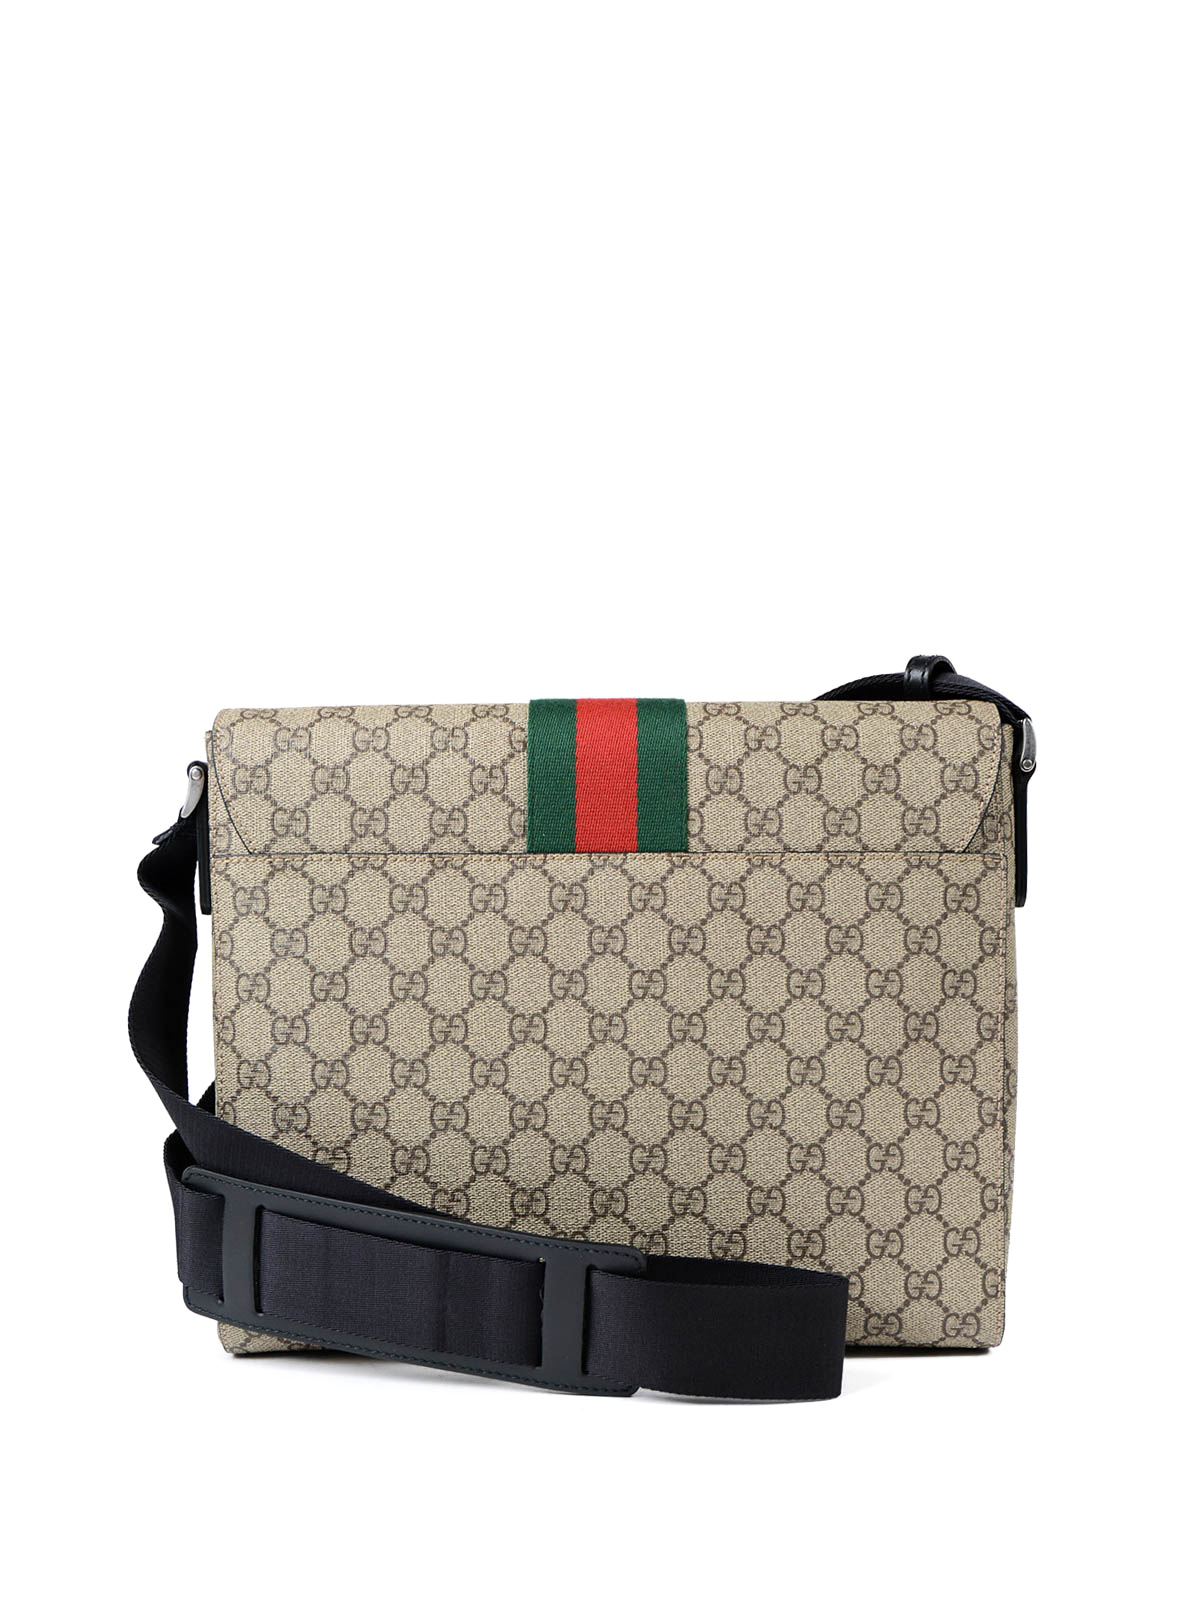 Gucci - GG Supreme Web fold over bag 